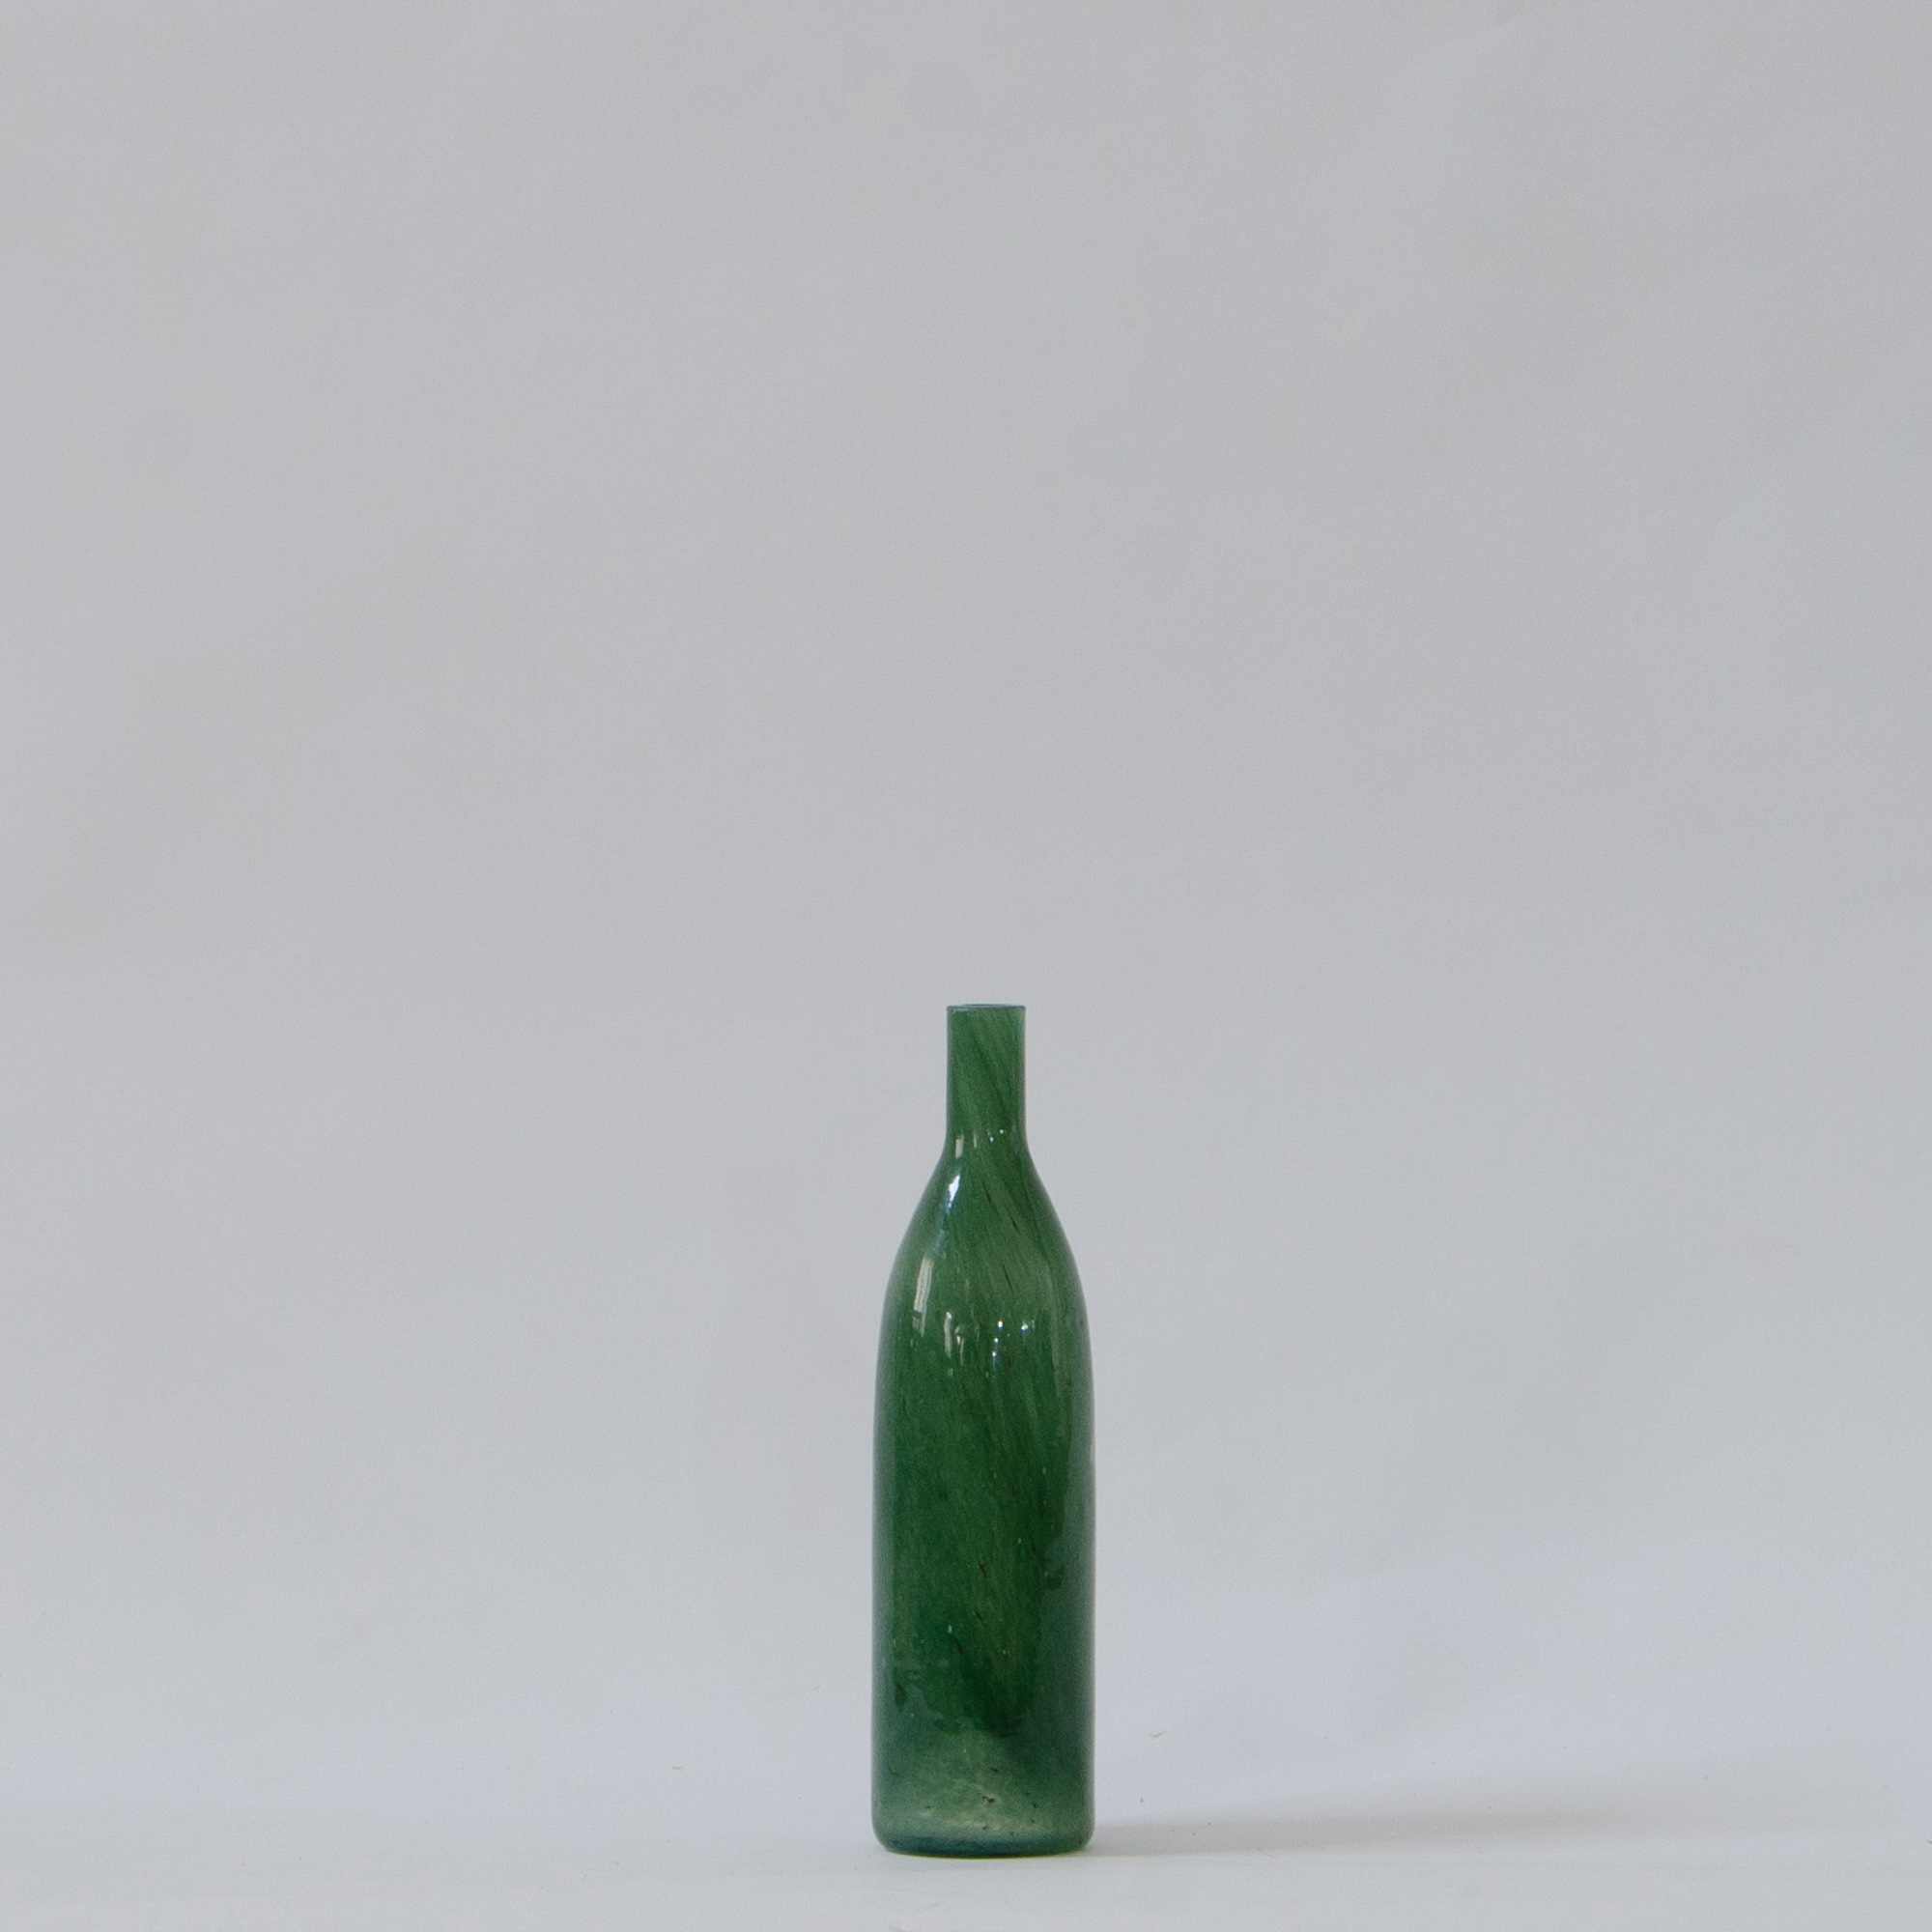 Jewel Glass Vase - Emerald